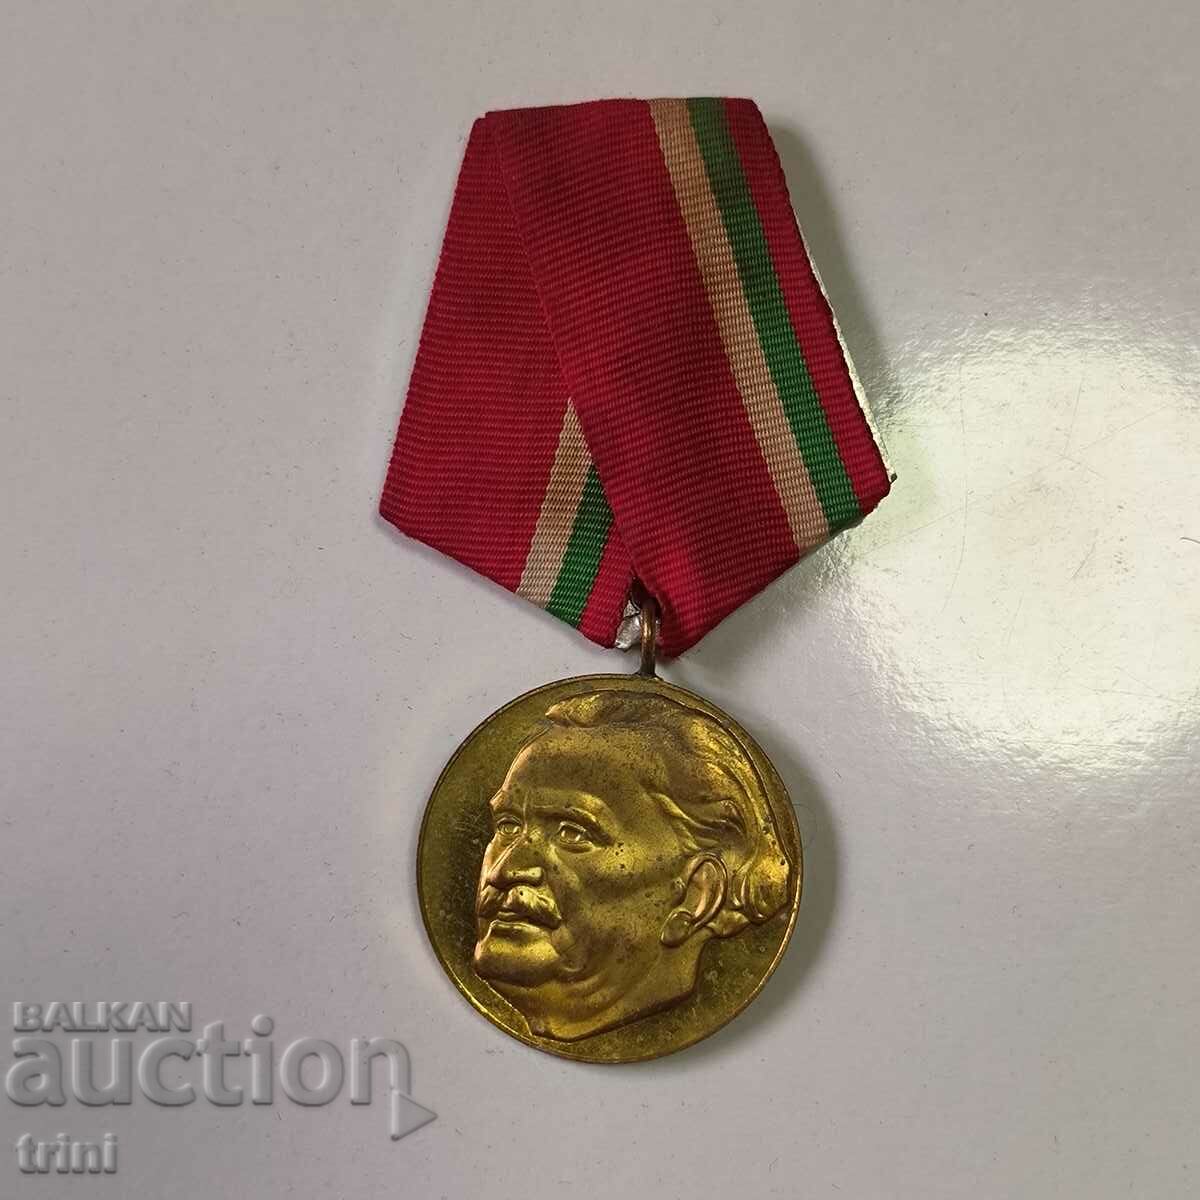 Медал 100 г. от рождението на Г. Димитров 1882-1982 г.